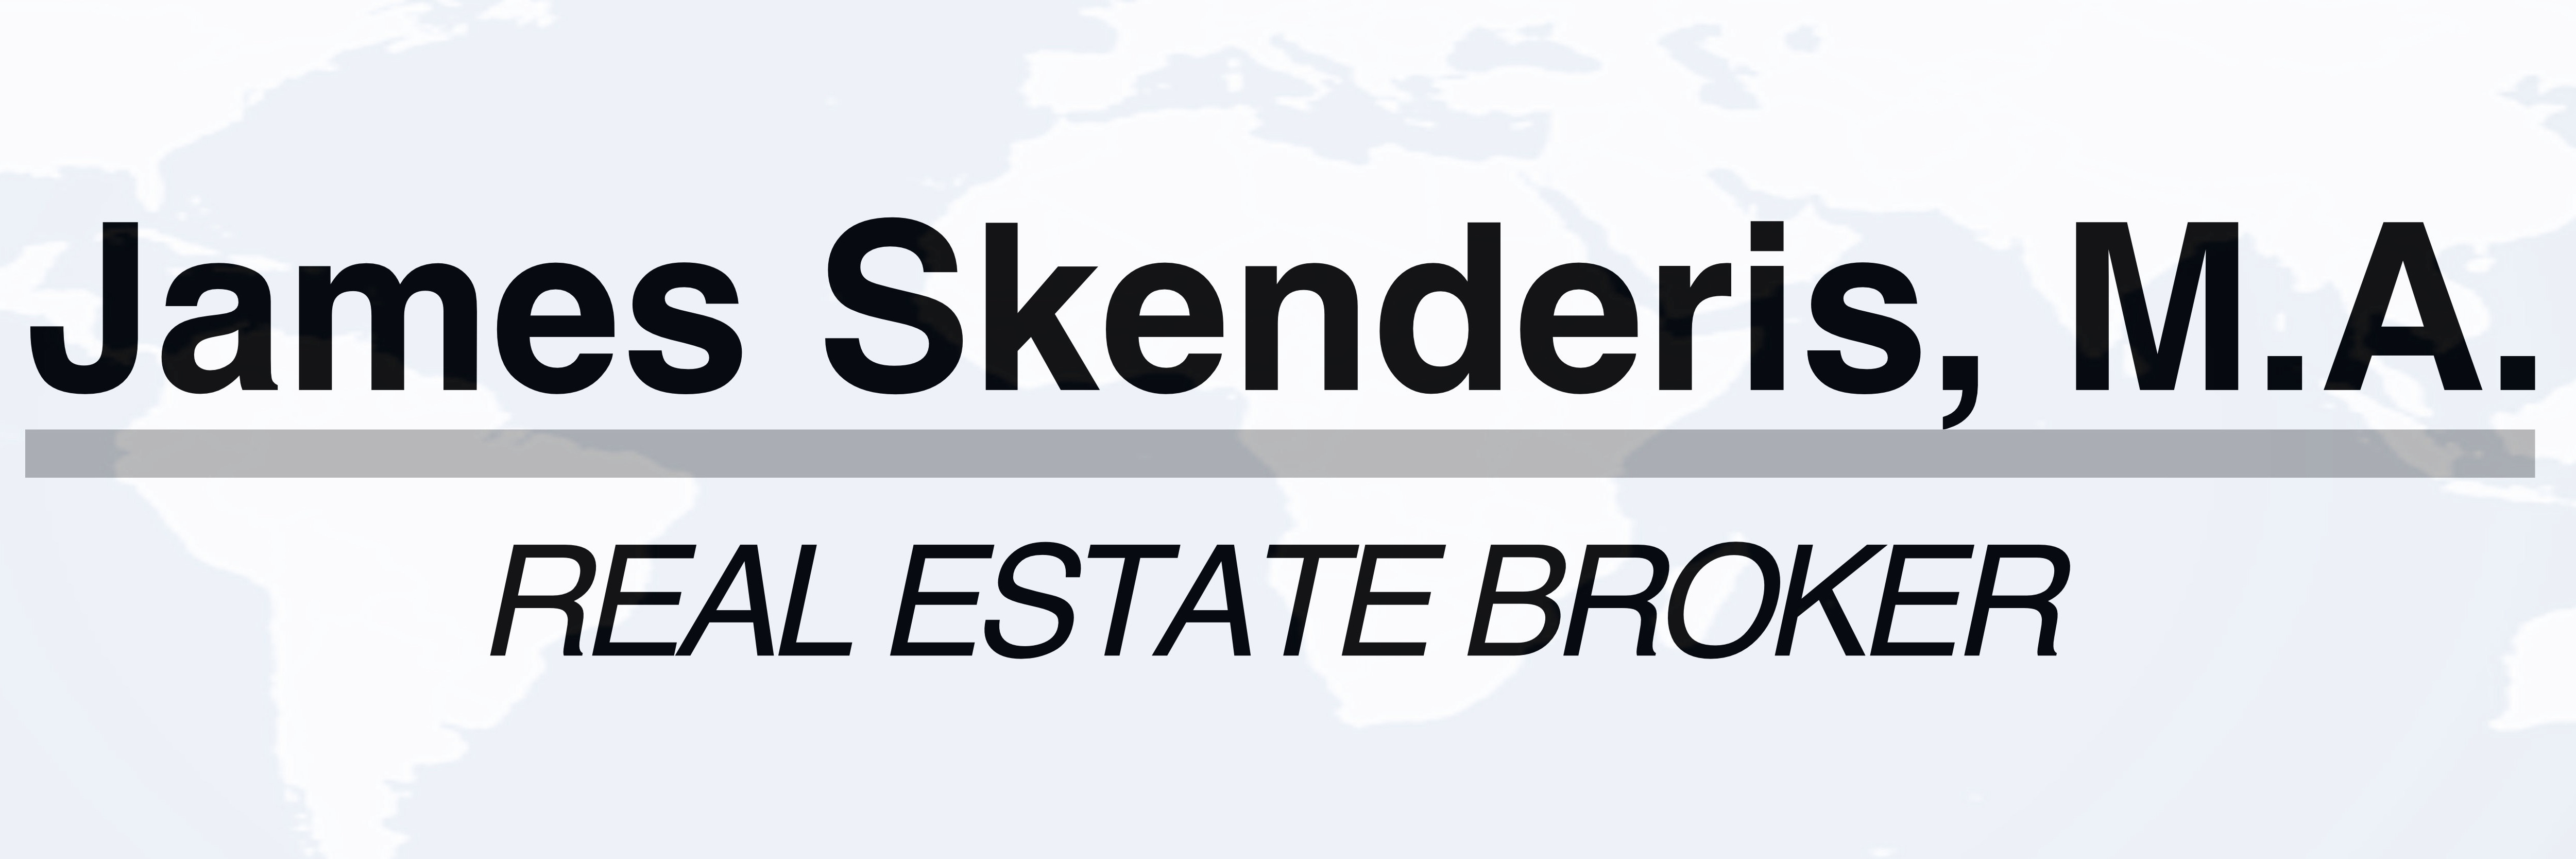 James Skenderis M.A., Real Estate Broker